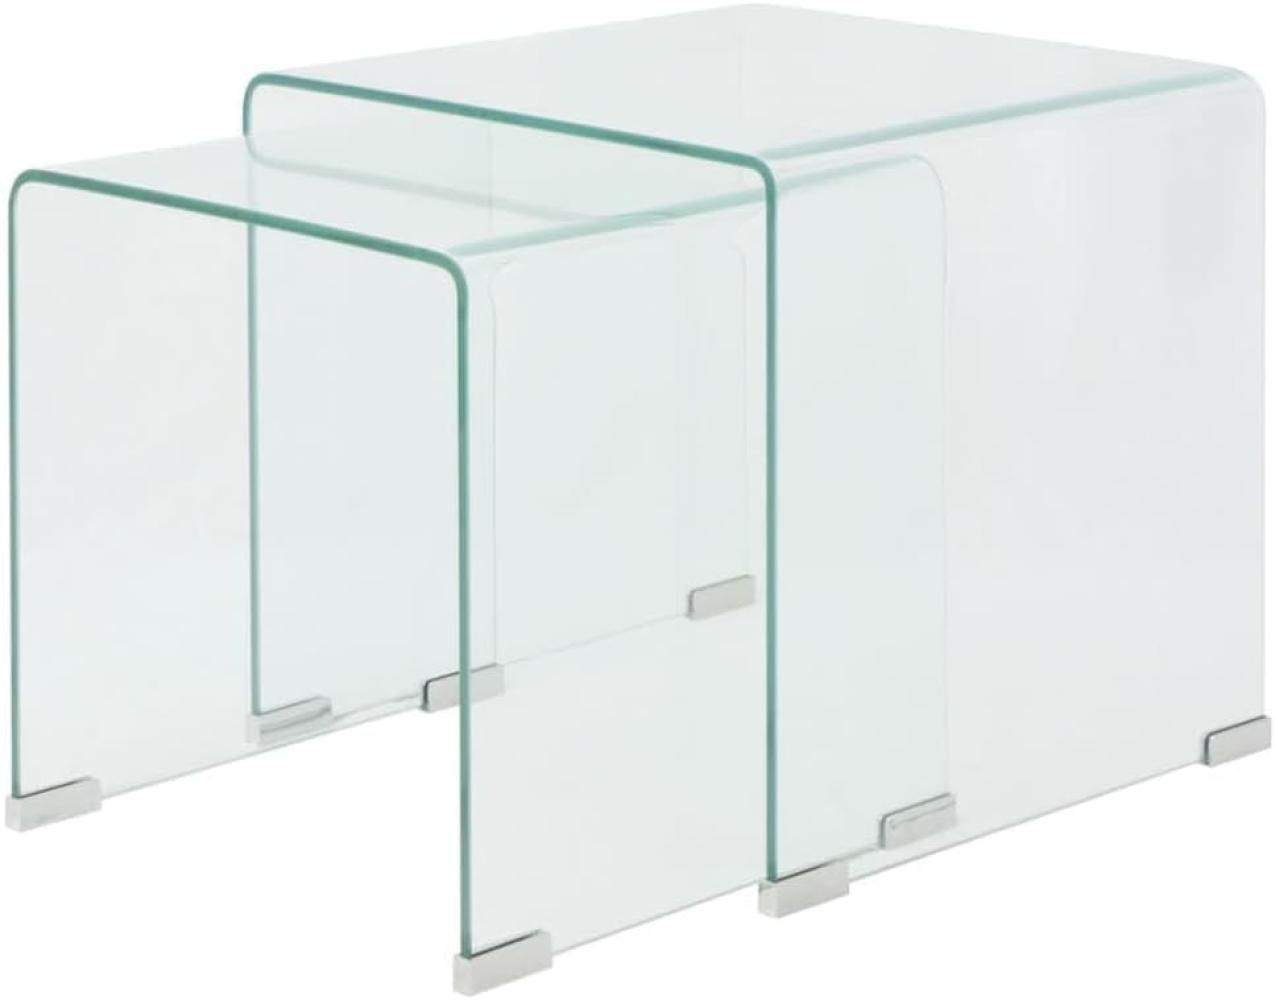 Zweiteiliges Satztisch-Set aus gehärtetem Glas Transparent Bild 1